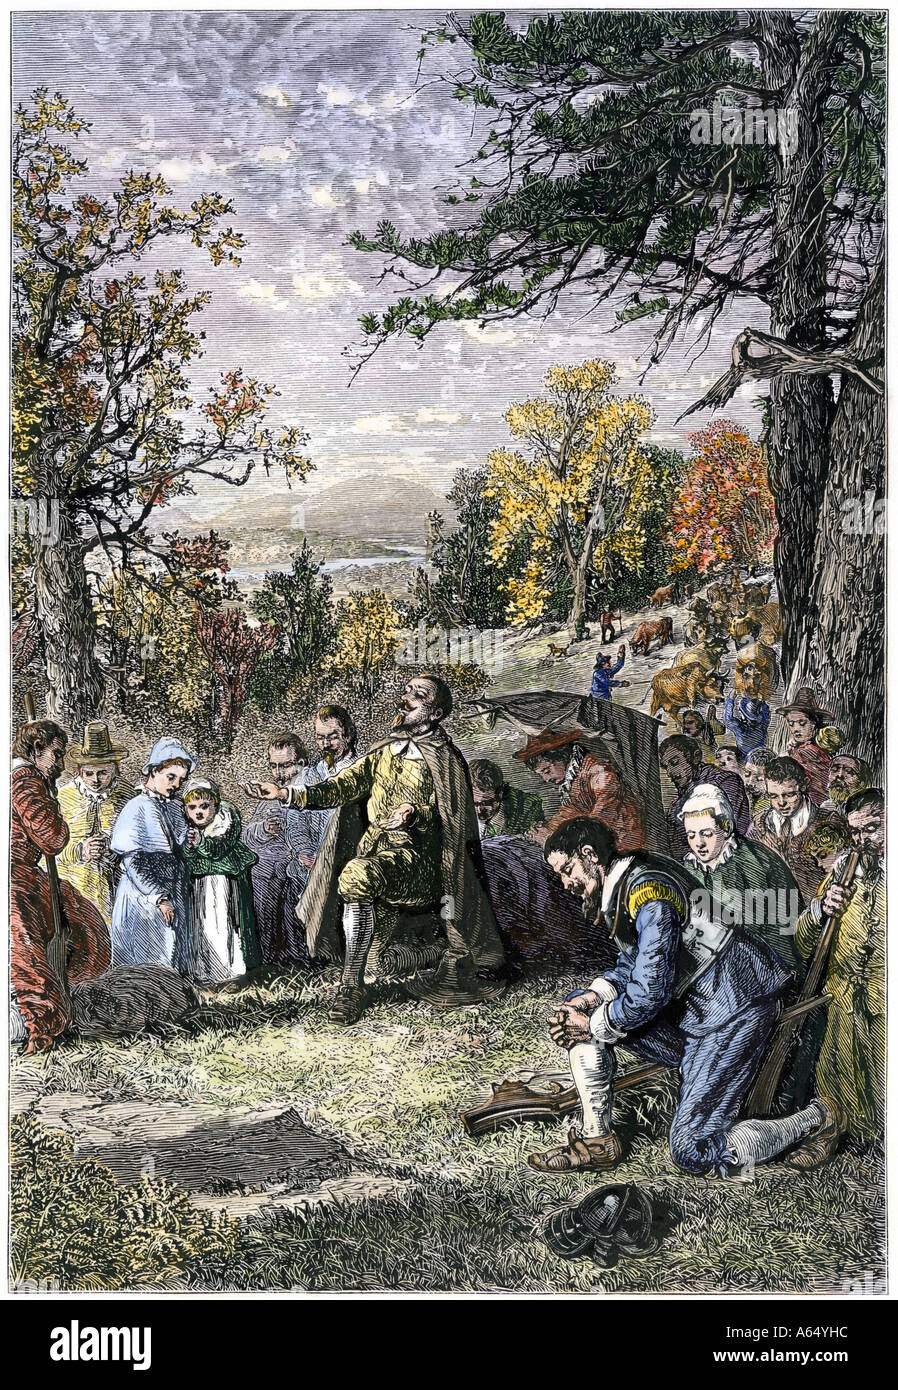 Puritan Gruppe unter der Leitung von Joseph Hooker settles Hartford auf der Connecticut River 1636. Hand - farbige Holzschnitt Stockfoto